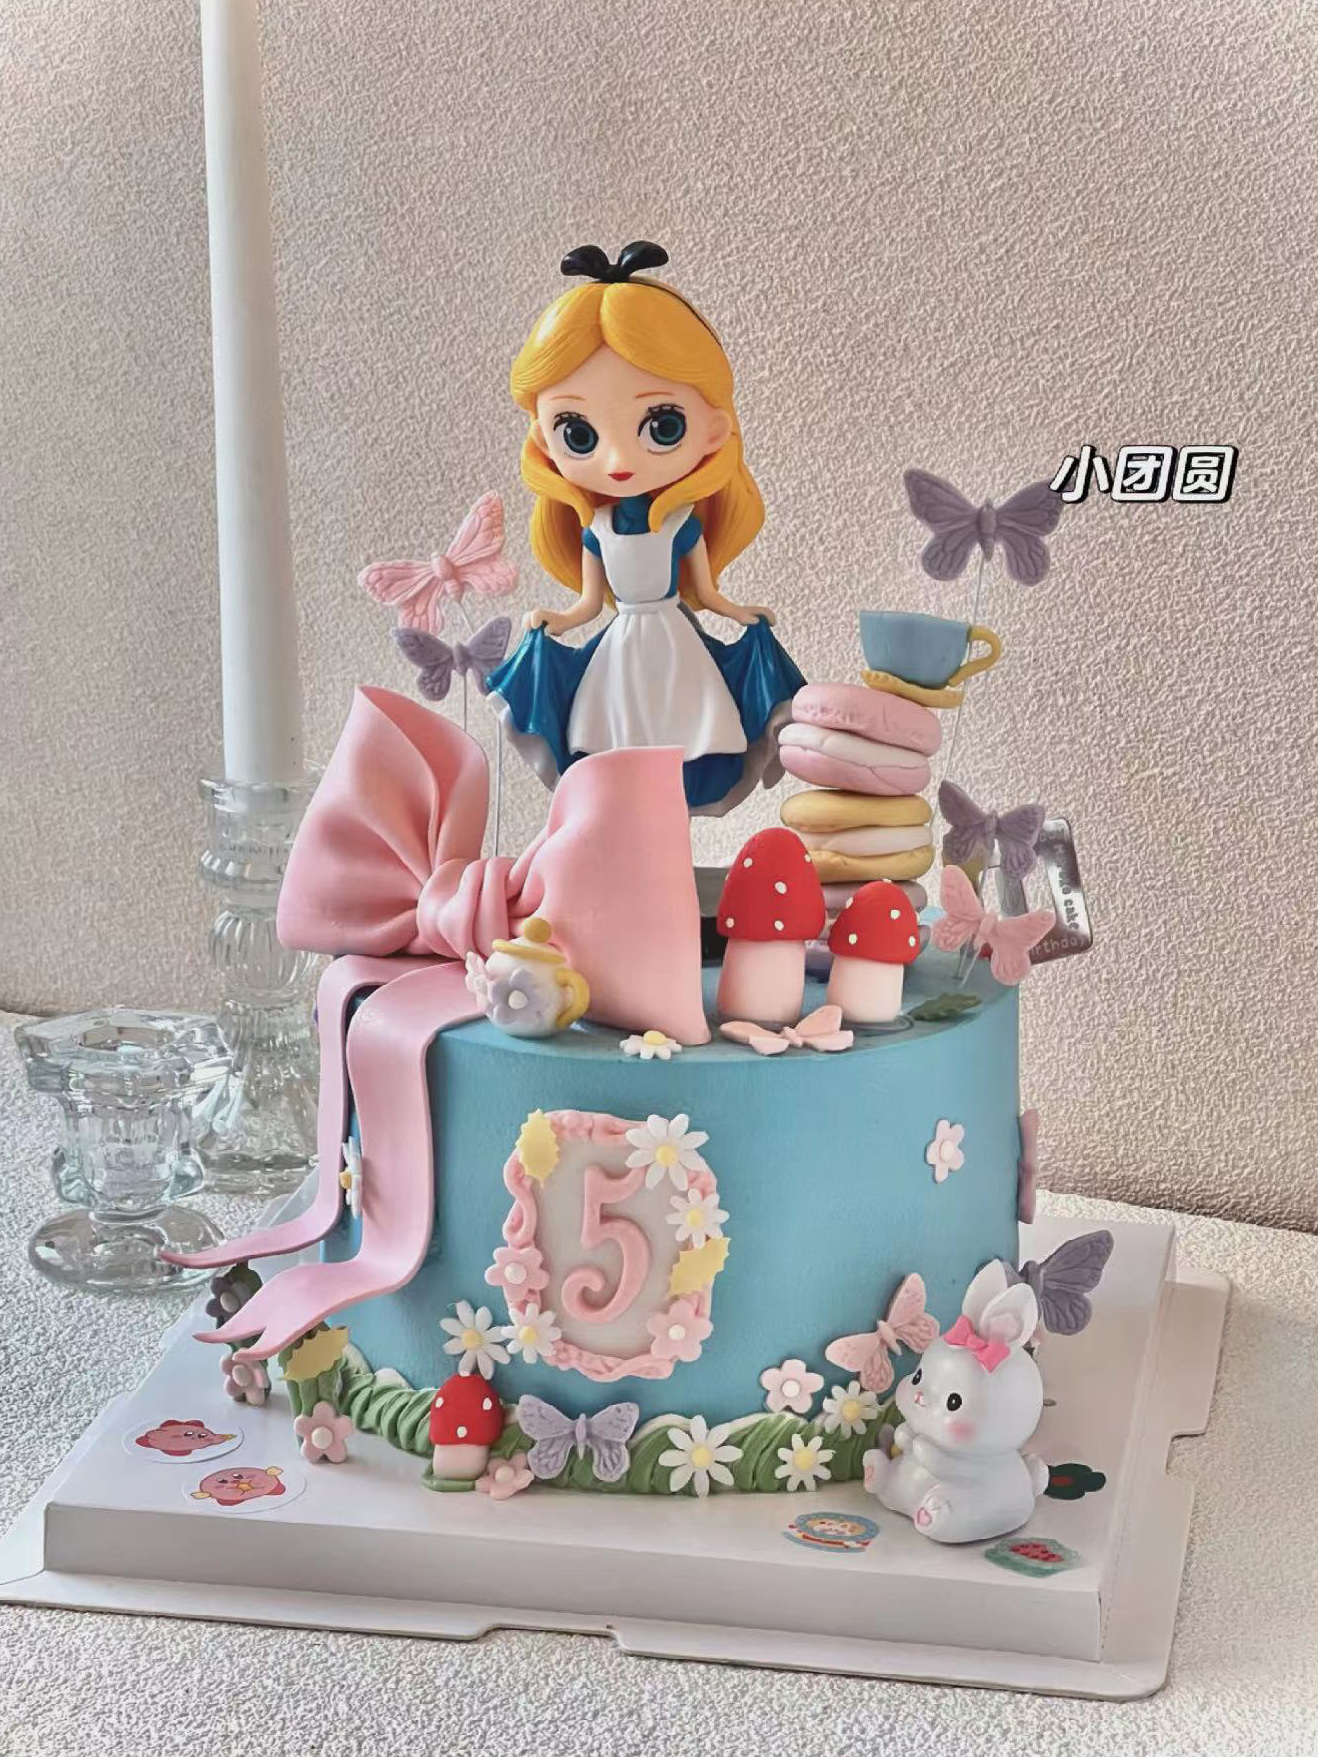 爱丽丝蛋糕装饰 可爱提裙子女孩金发小公主生日蛋糕装饰摆件插件